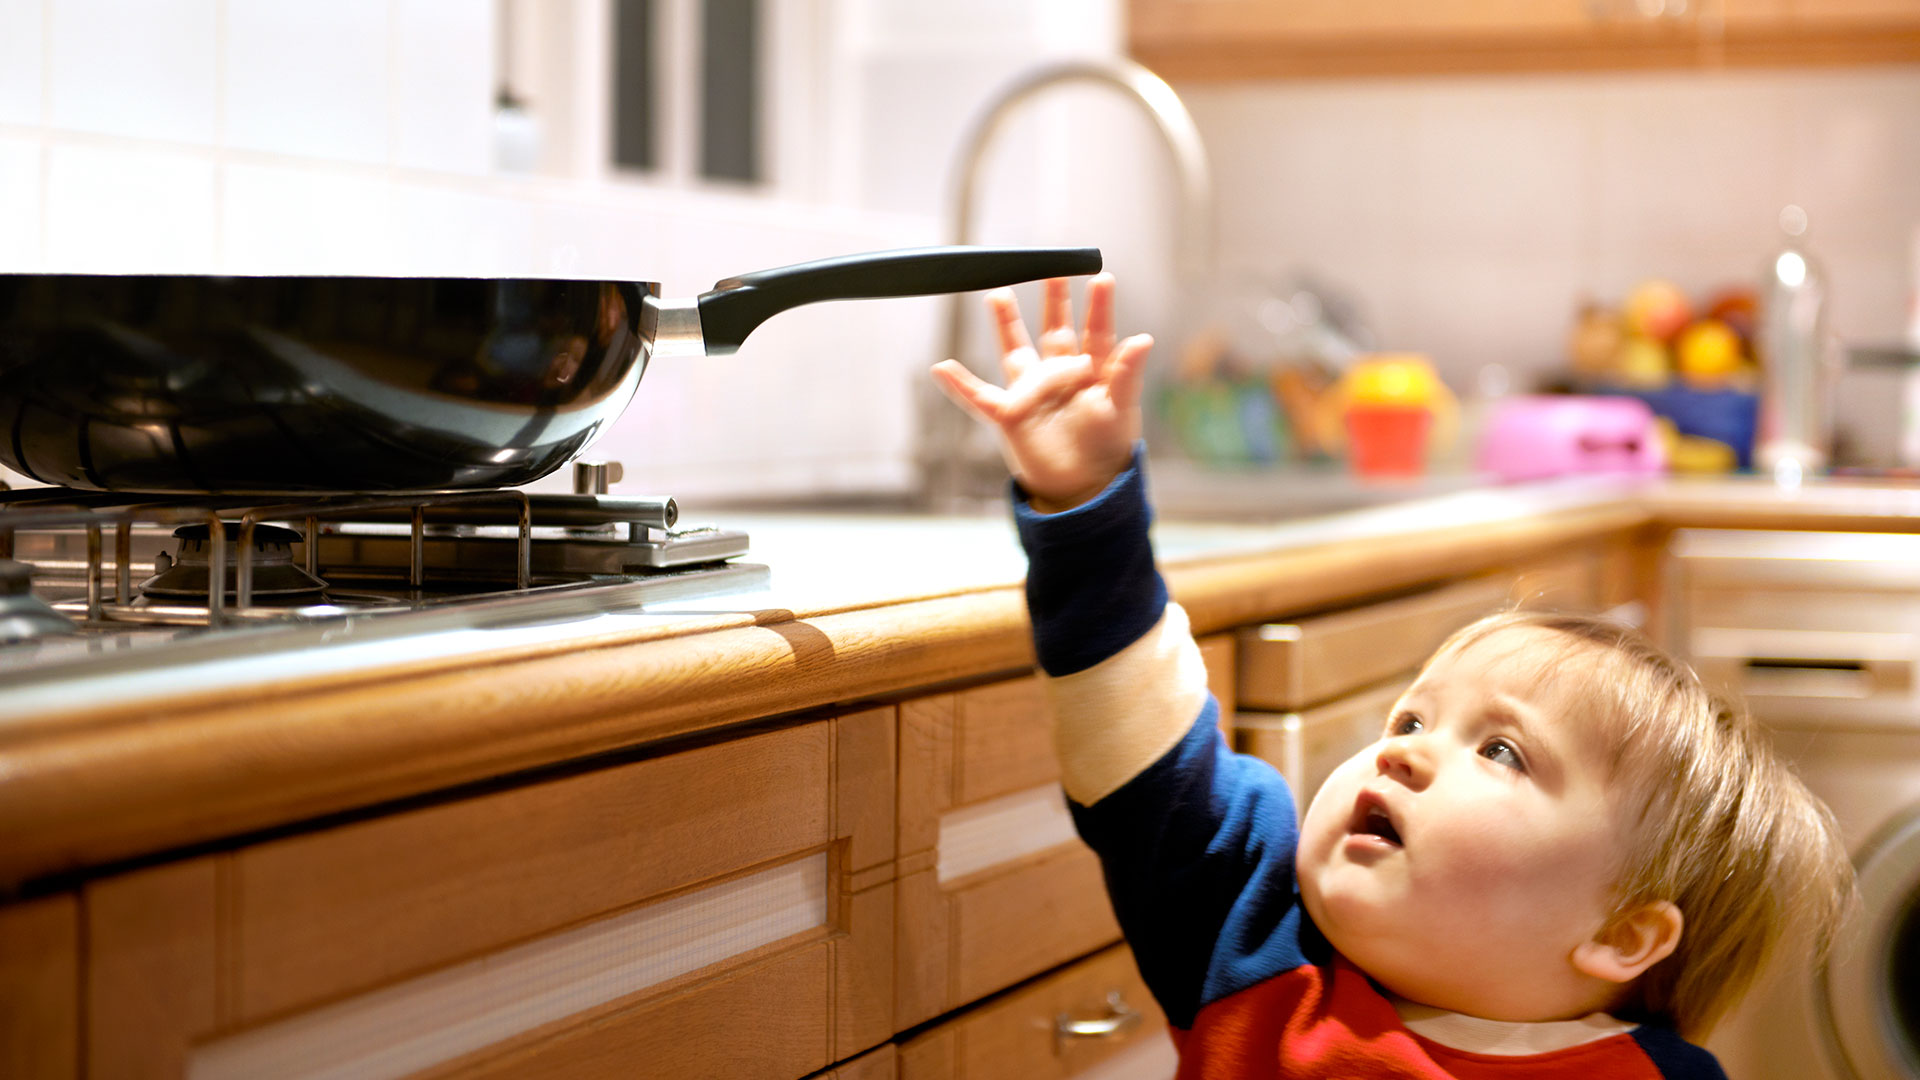 Consejos para padres: cómo evitar accidentes domésticos con los niños, según los expertos